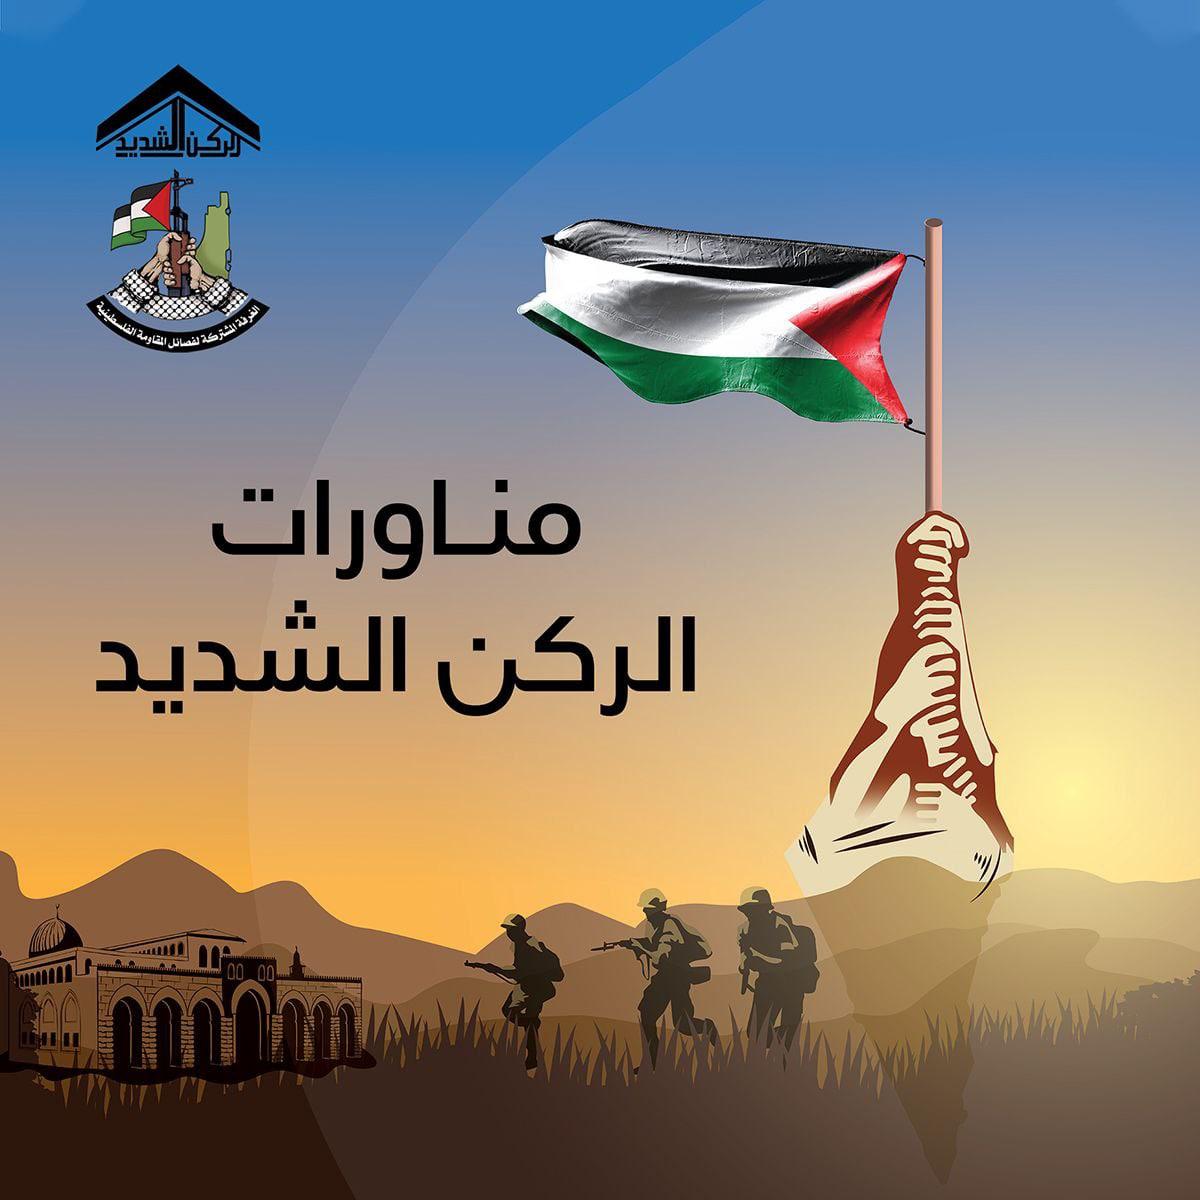 مؤتمر الغرفة المشتركة لفصائل المقاومة الفلسطينية للإعلان عن انطلاق مناورات #الركن الشديد